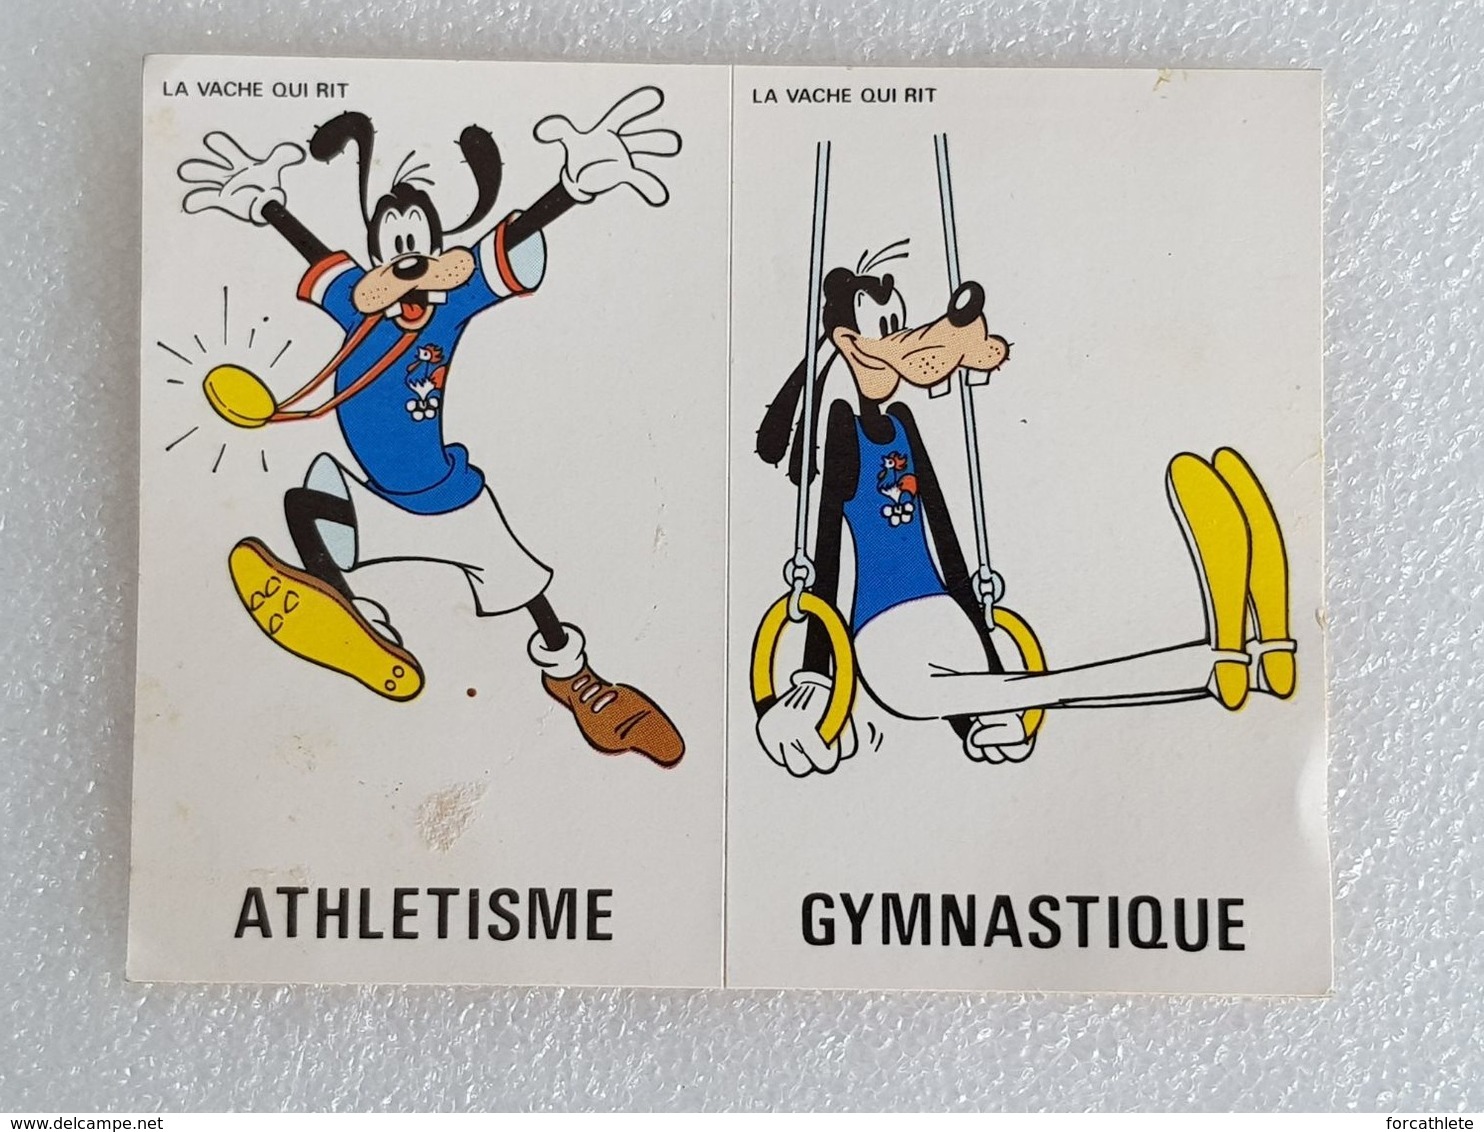 La Vache Qui Rit - The Laughing Cow - Dingo - Goofy - Athlétisme - Athletics - Gym - Gymnastic - Autocollant - Sticker - Collections